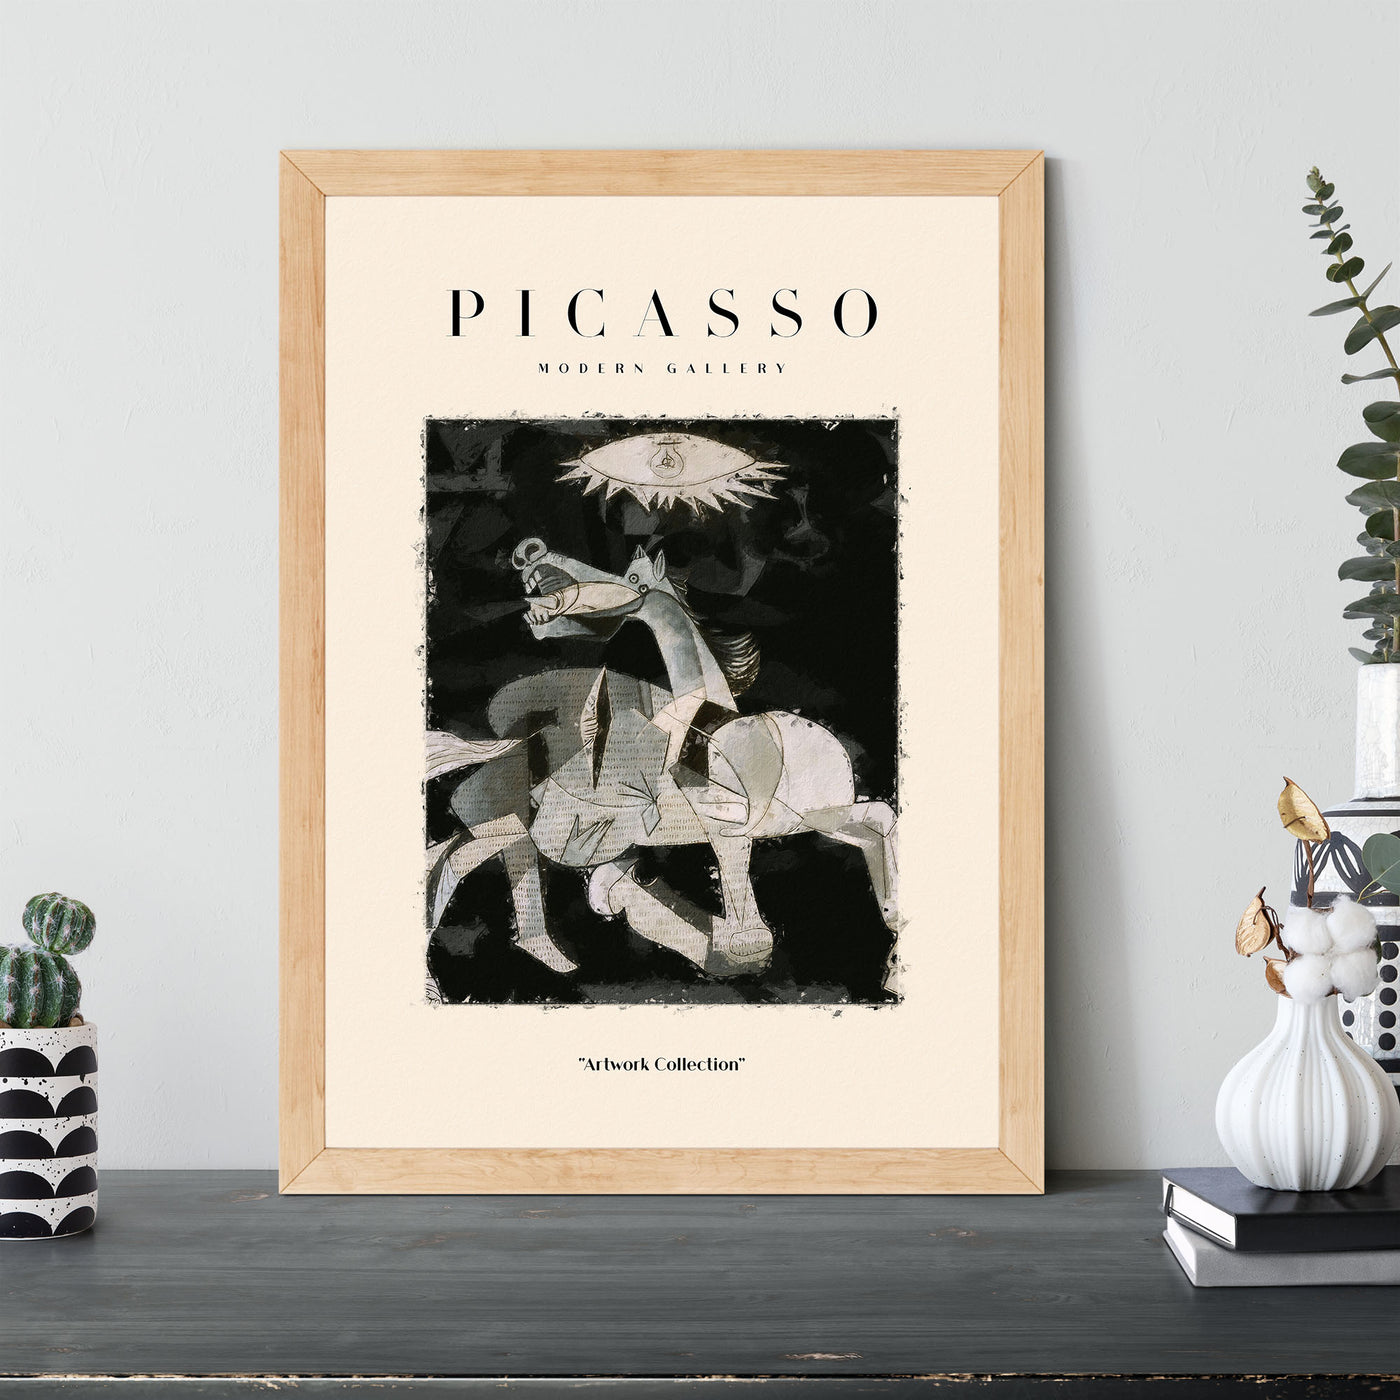 Pablo Picasso - #38